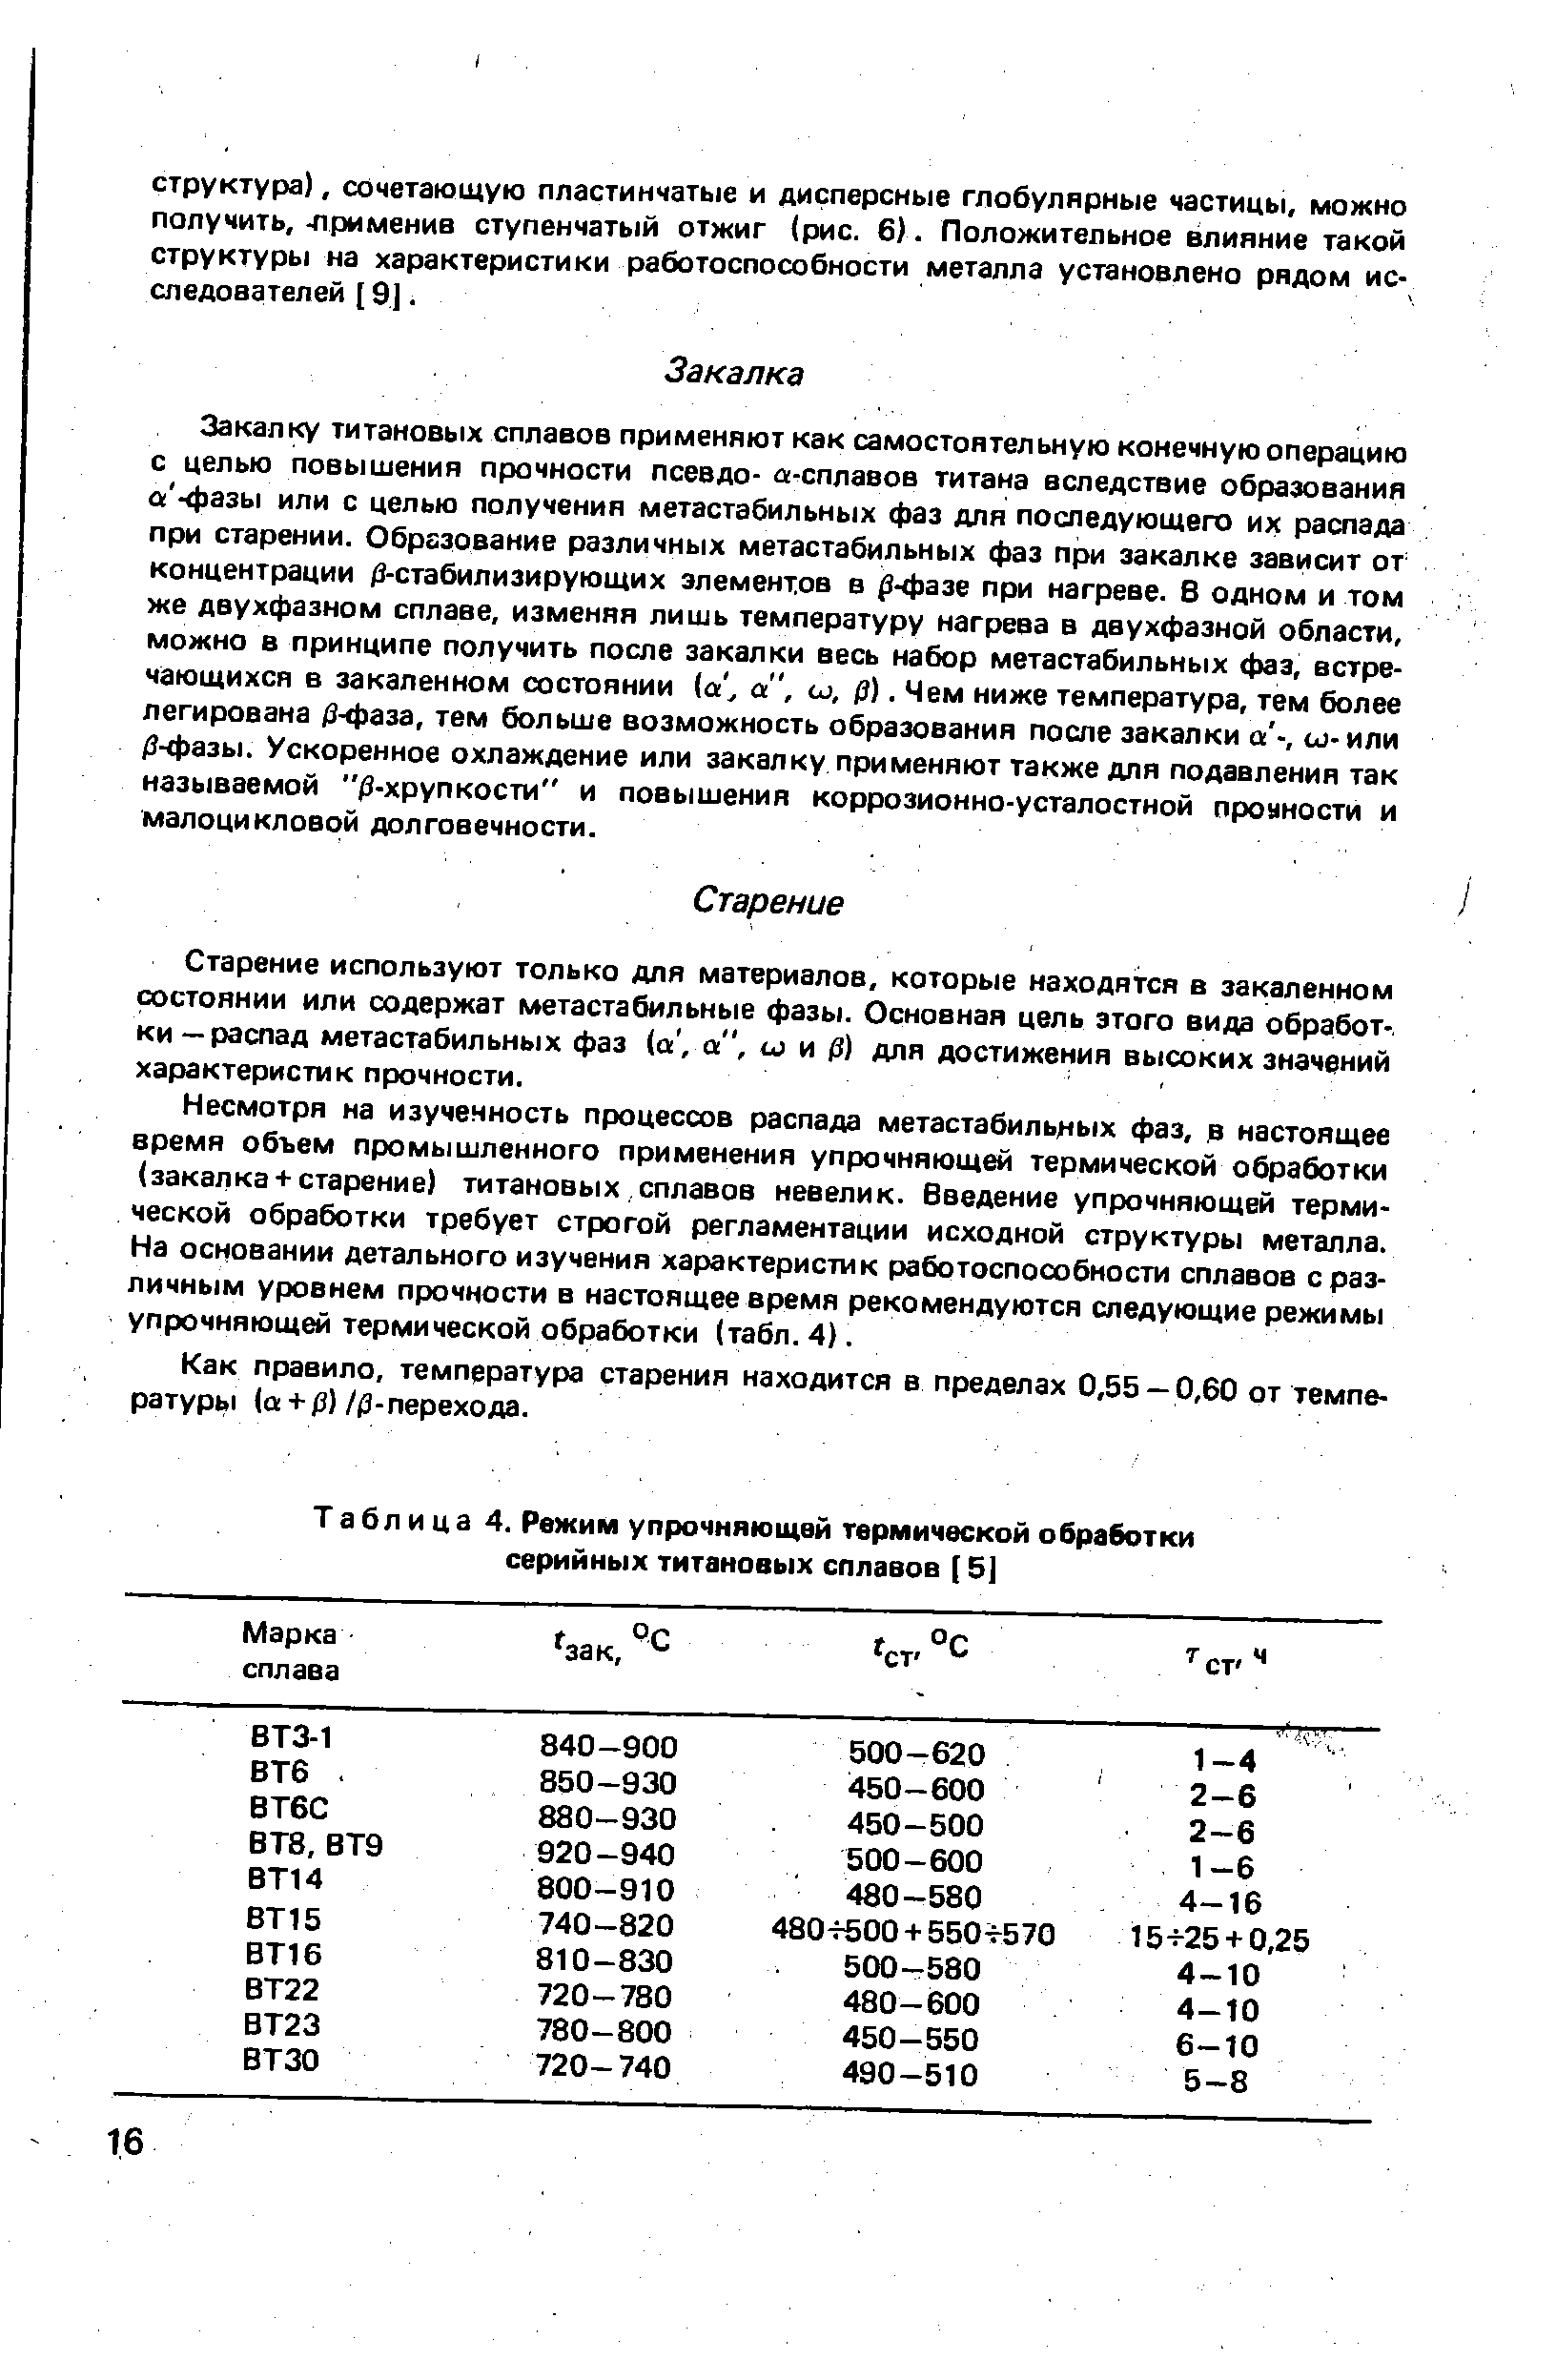 Таблица 4. Режим упрочняющей термической обработки серийных титановых сплавов (5]
